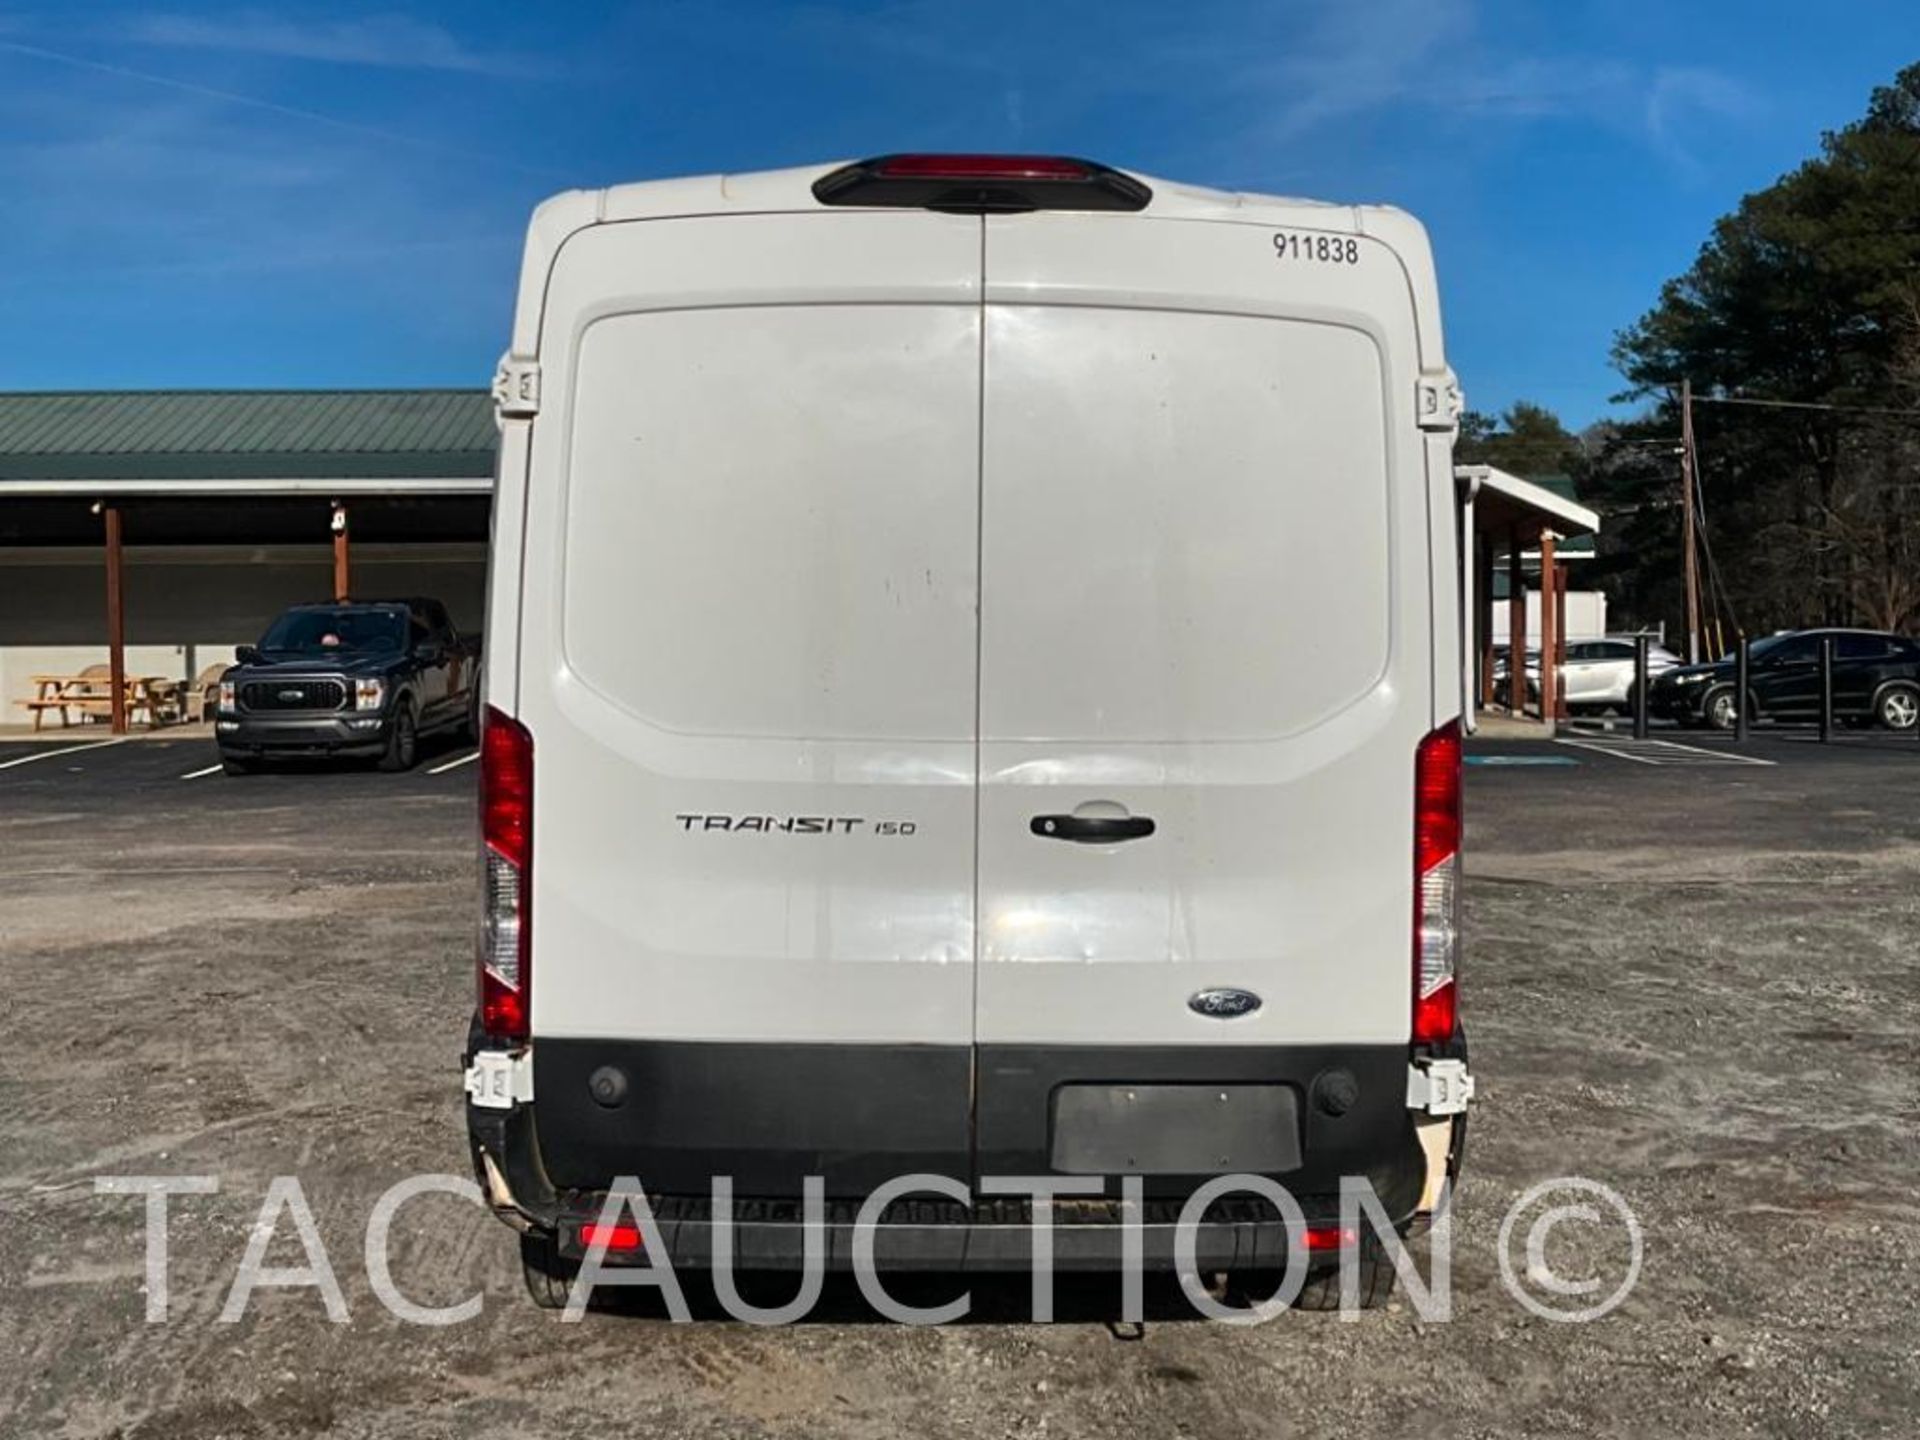 2019 Ford Transit 150 Cargo Van - Image 4 of 46